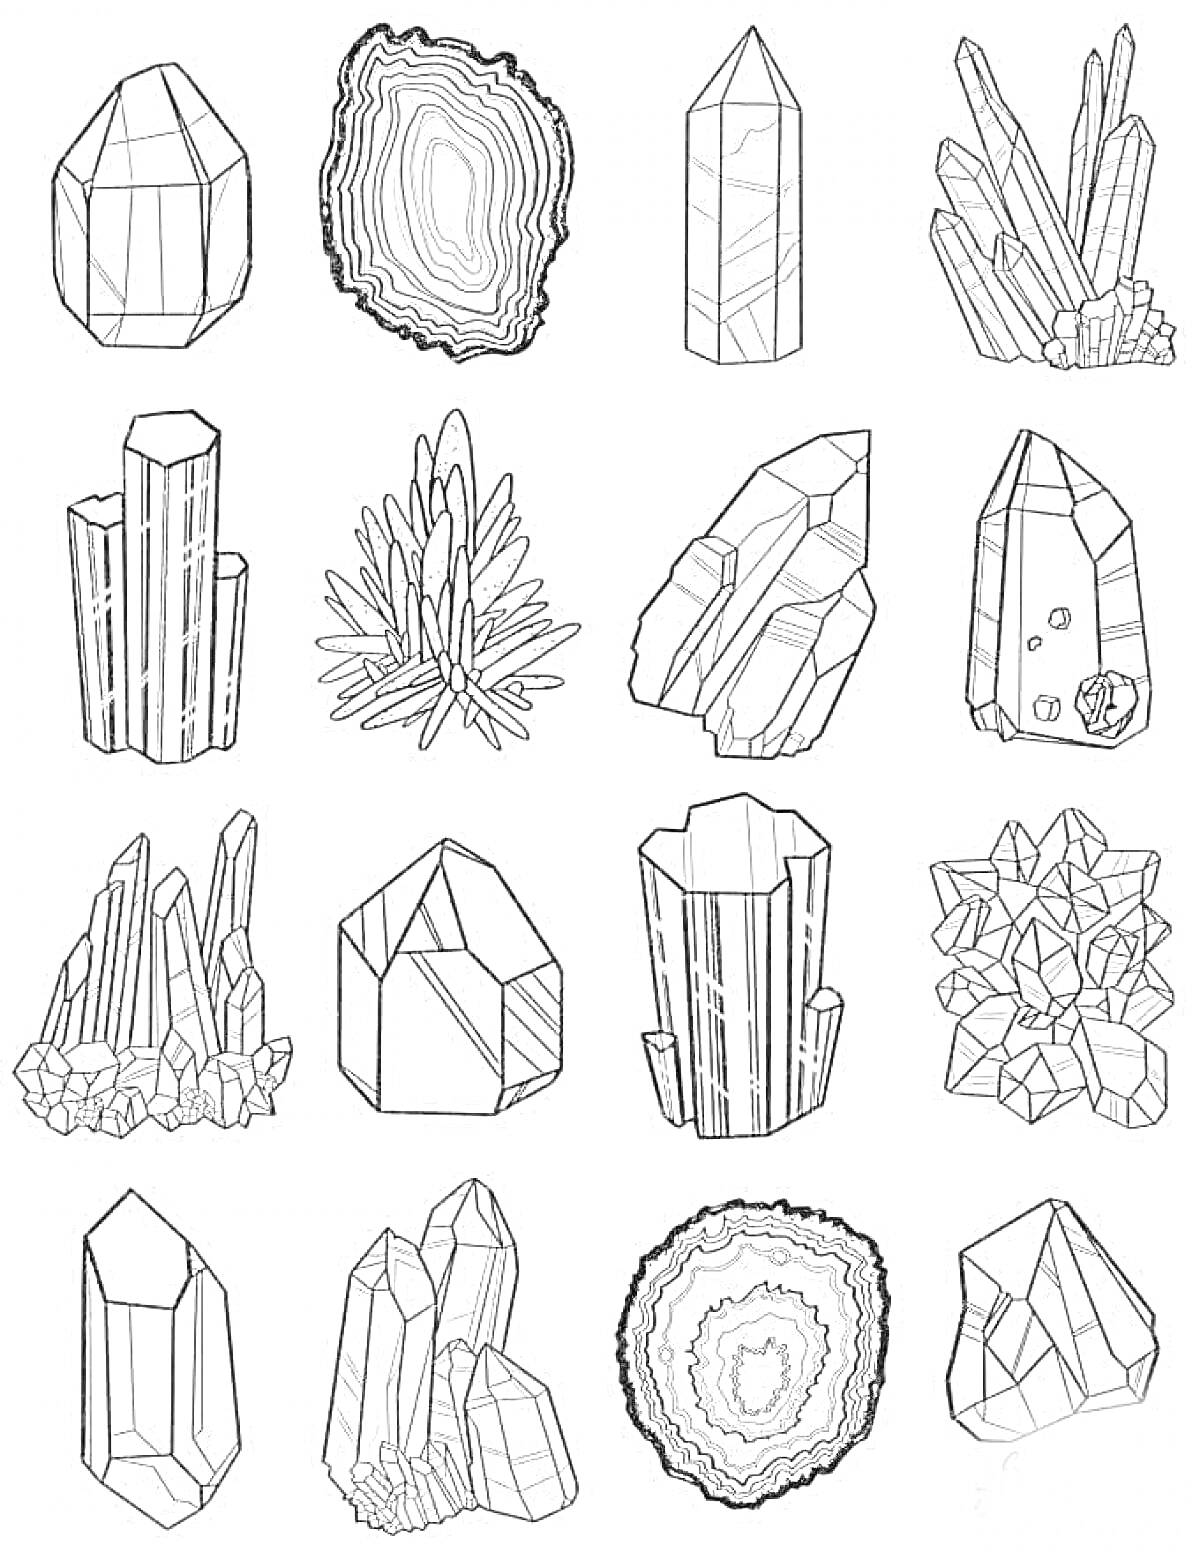 Набор геометрических камней и кристаллов: одиночные кристаллы, кристаллические кластеры, агат с концентрическими слоями